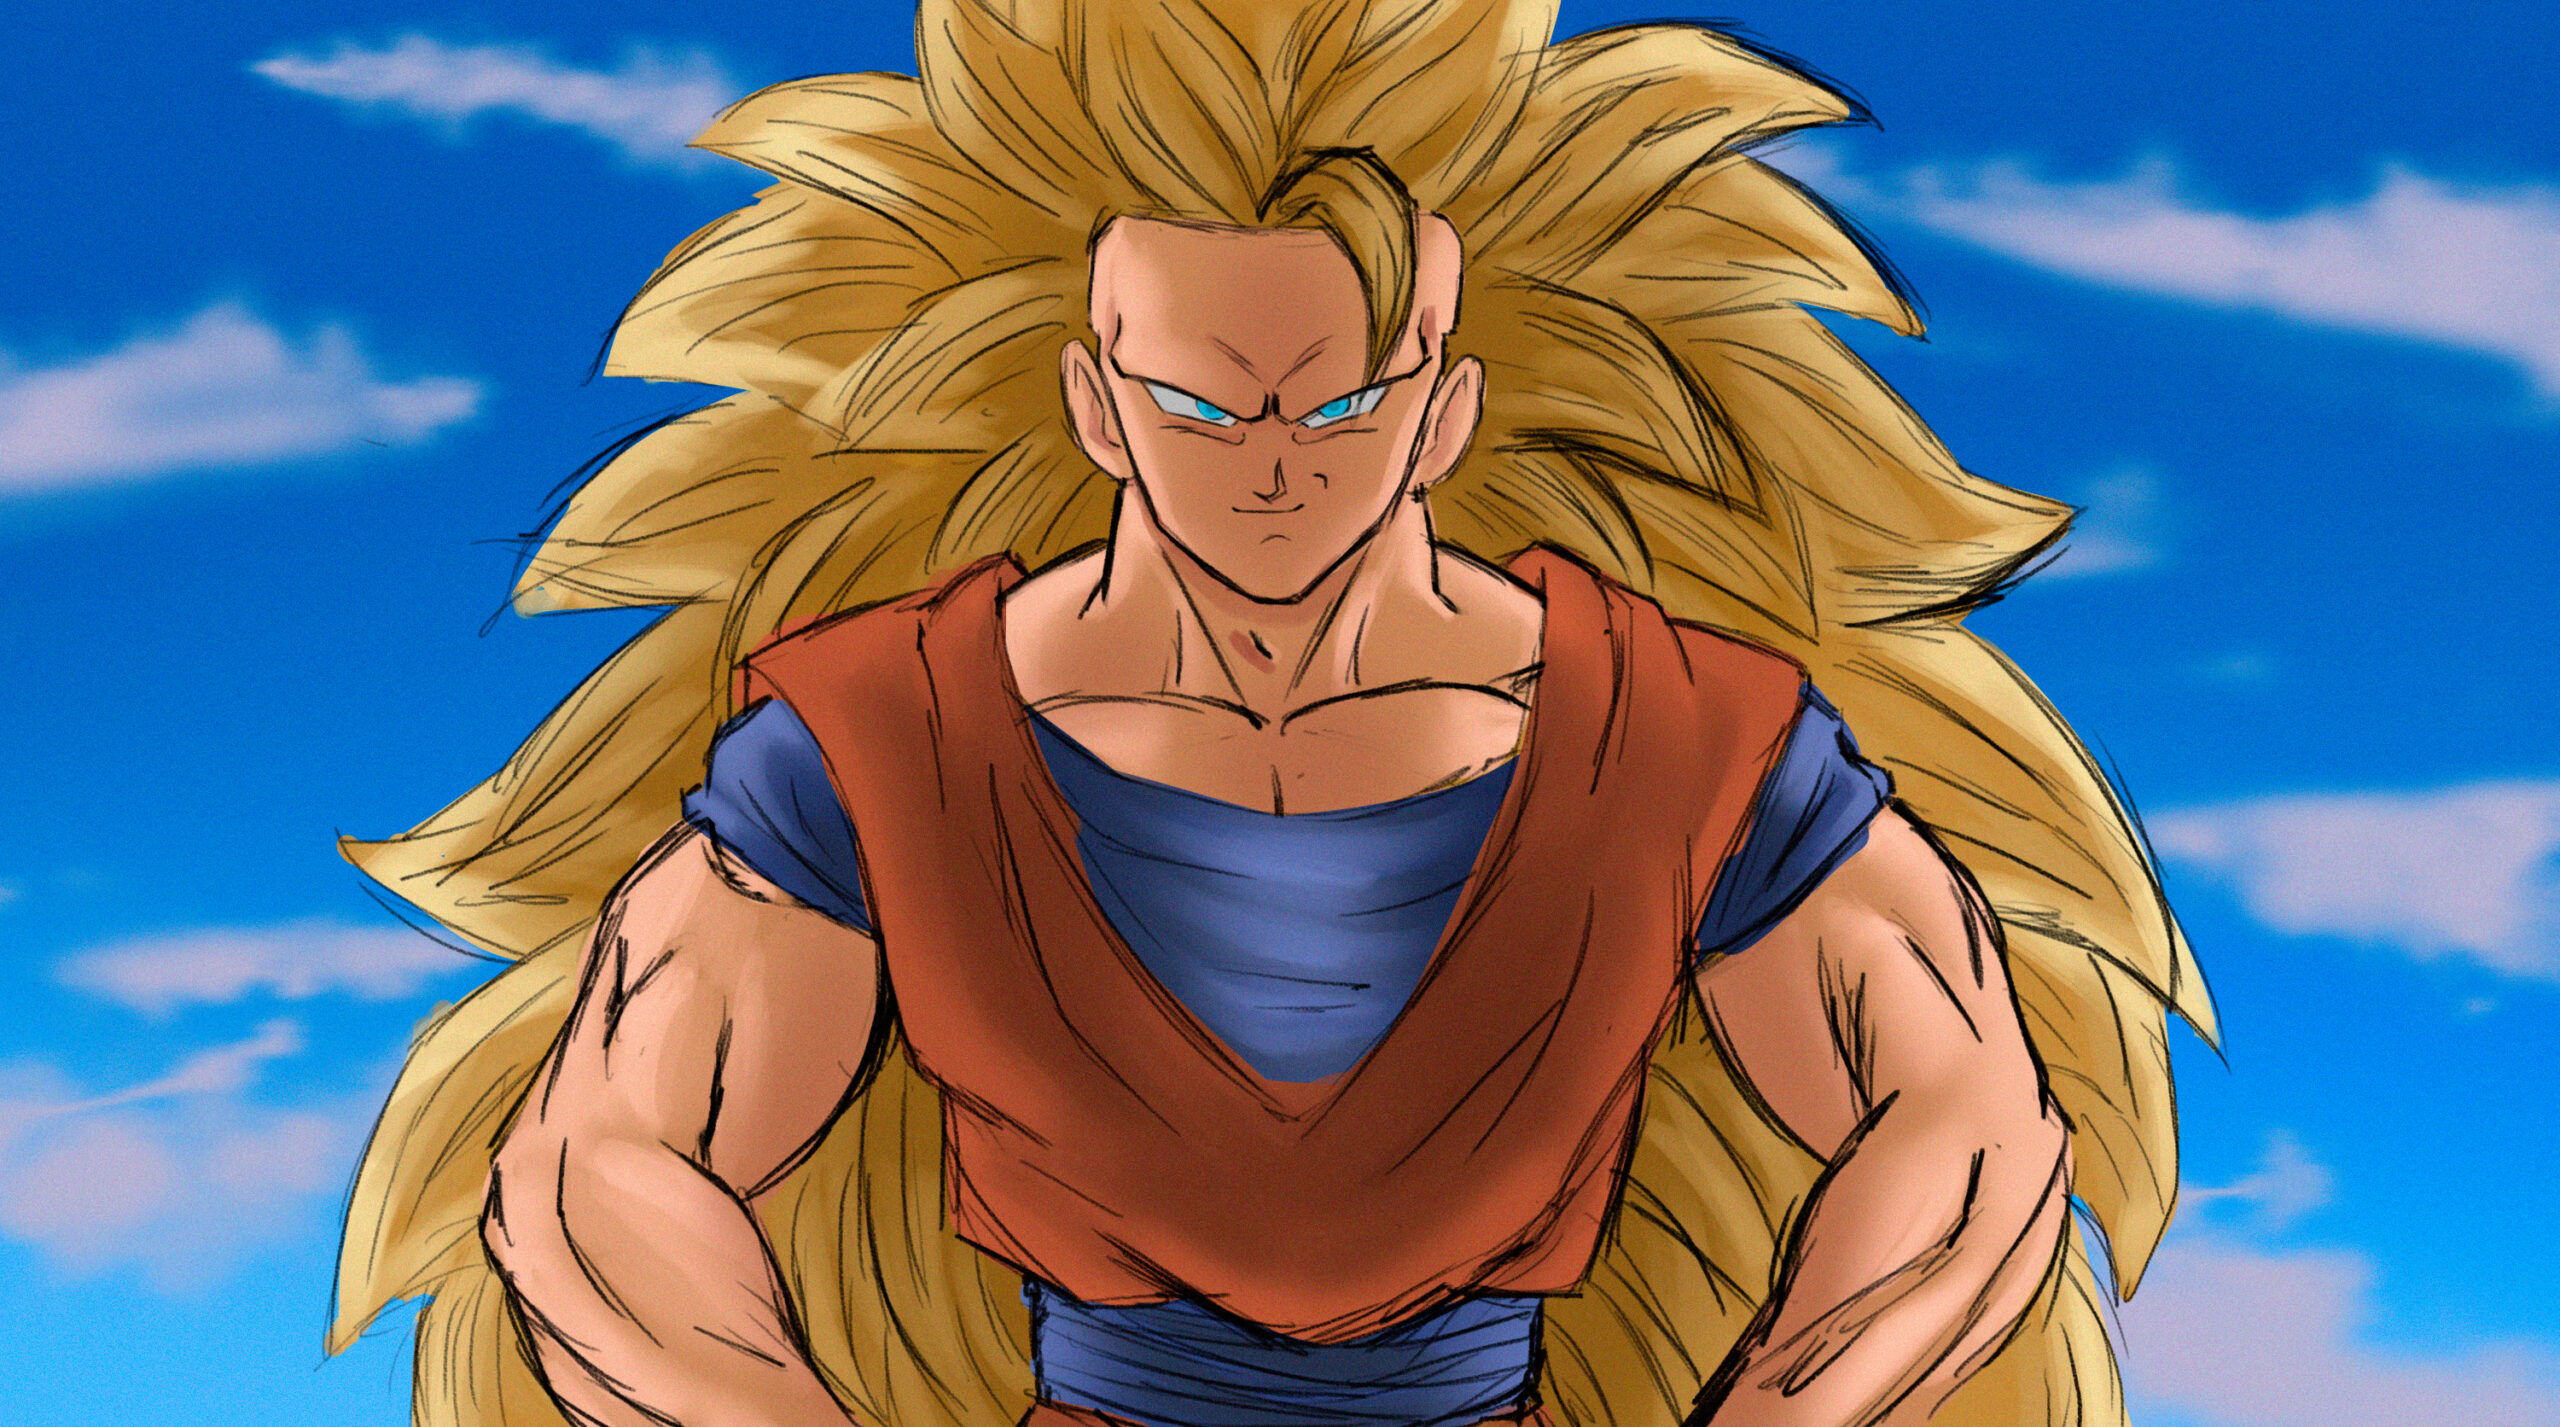 Goku SsjG - Desenho de theemanuel - Gartic